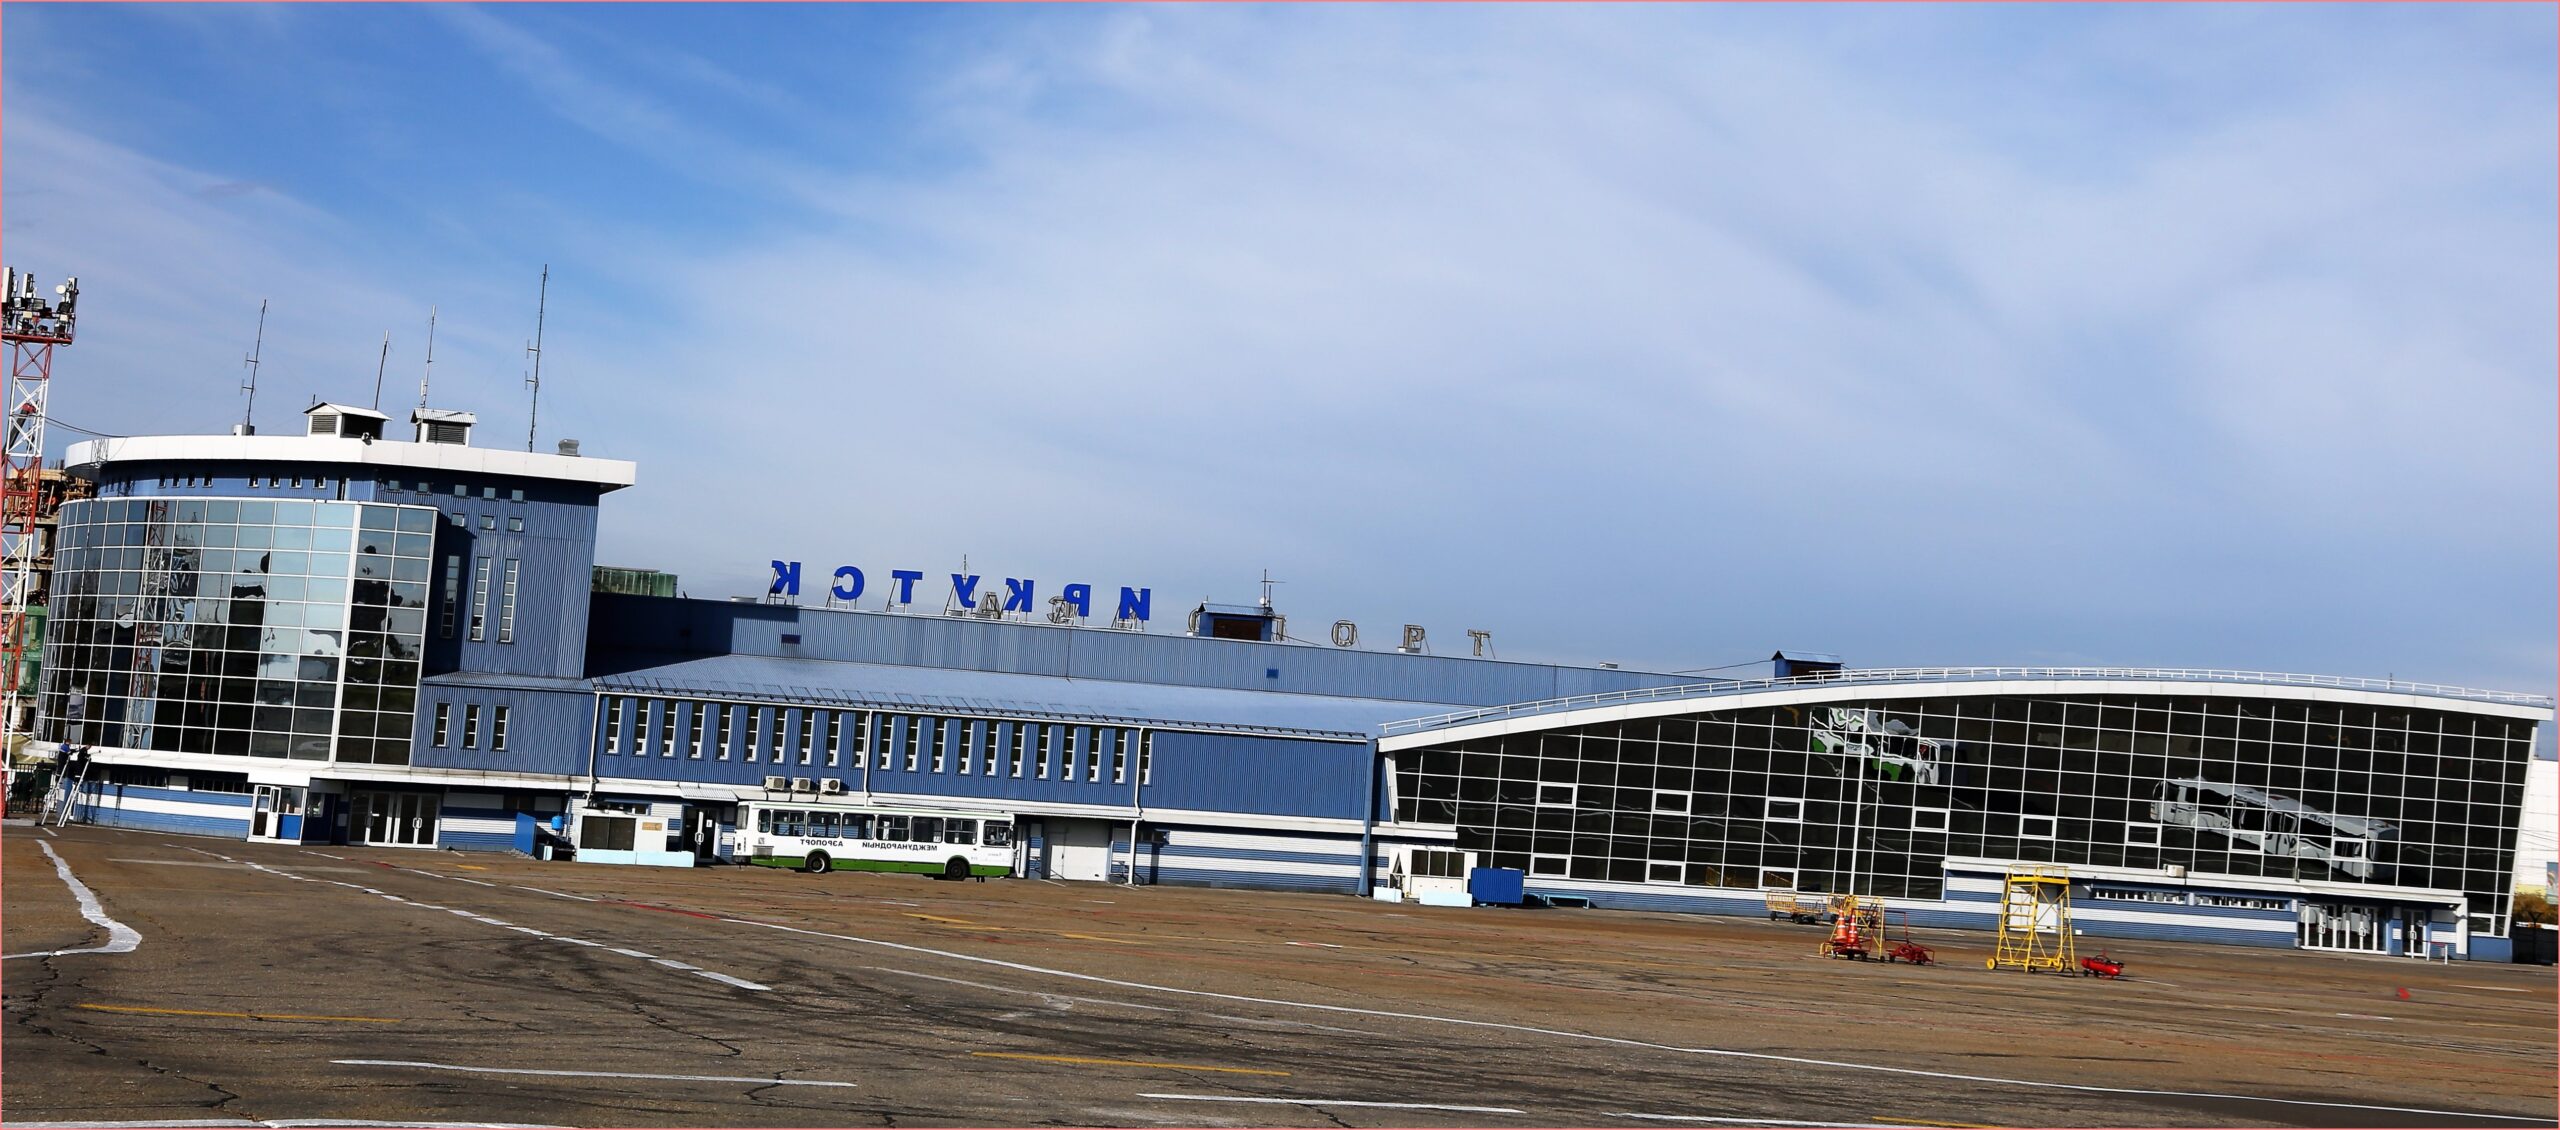 Как добраться до аэропорта Иркутска. Варианты транспорта, цены и расписание  • Дешёвые авиабилеты и туры из Иркутска (IKT)